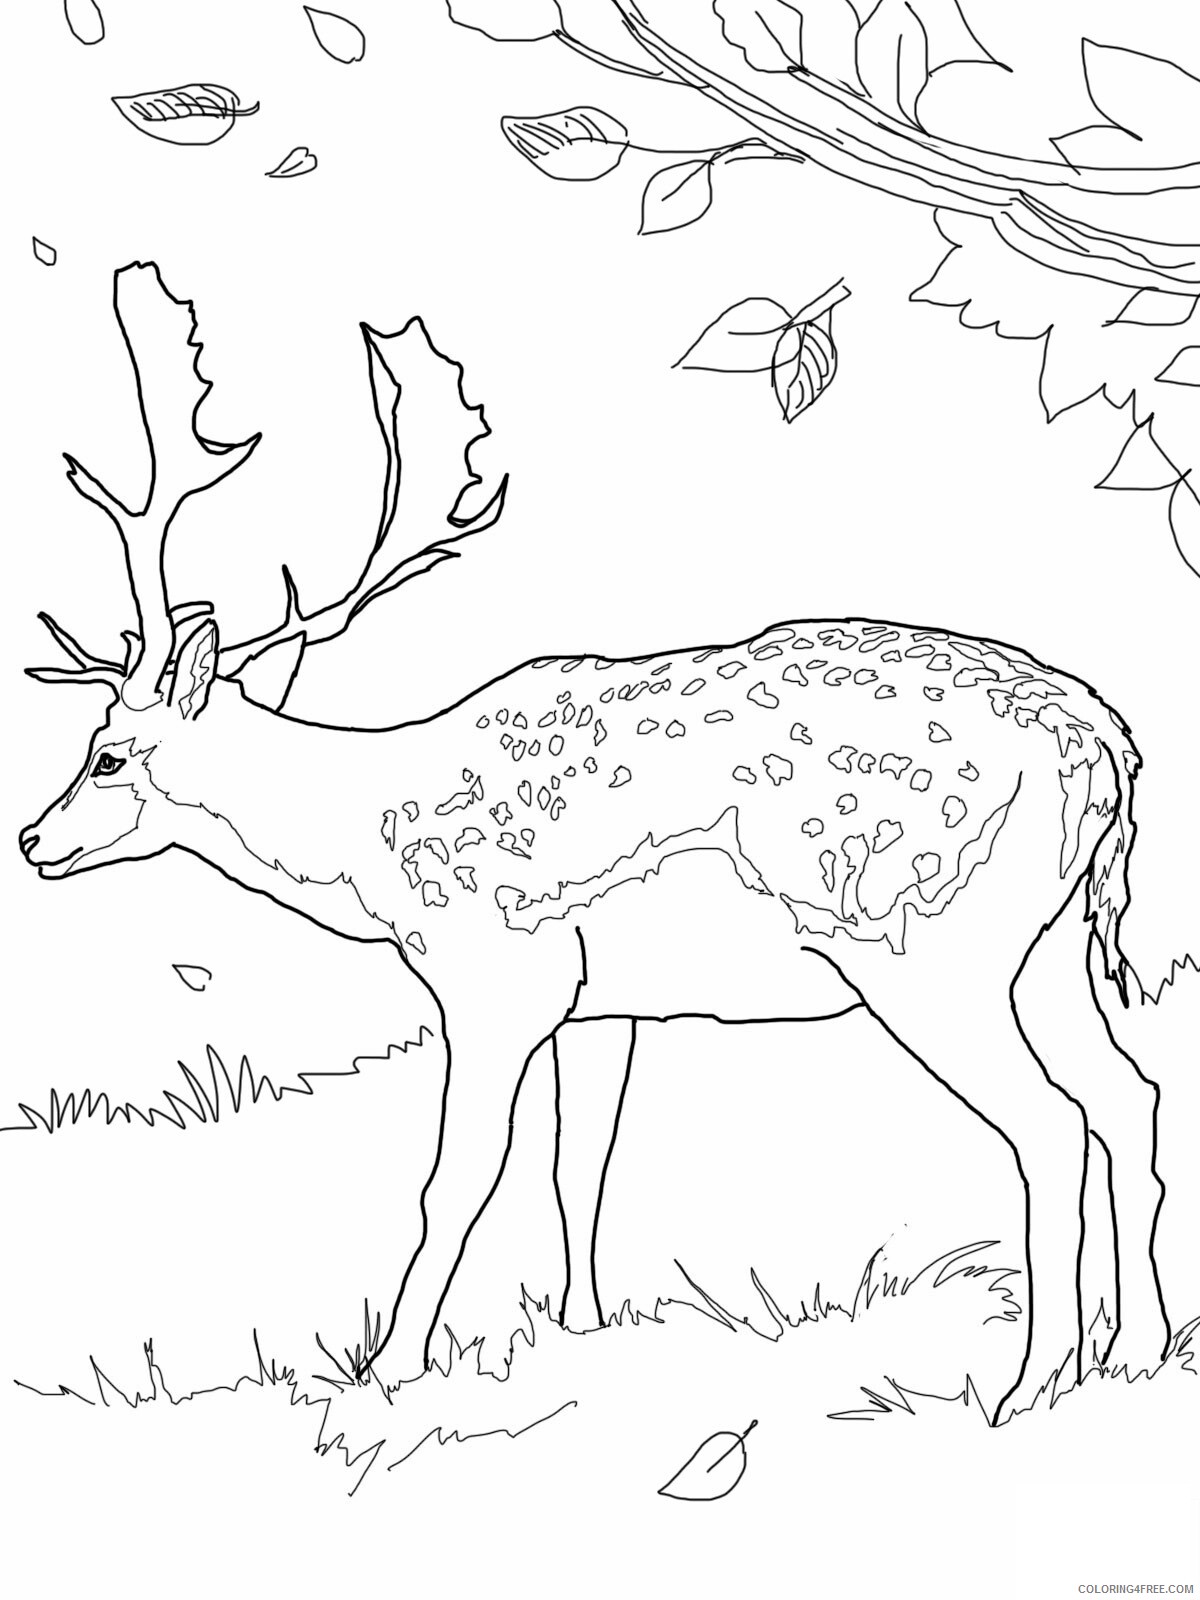 Deer Coloring Pages Animal Printable Sheets Deer 2021 1442 Coloring4free